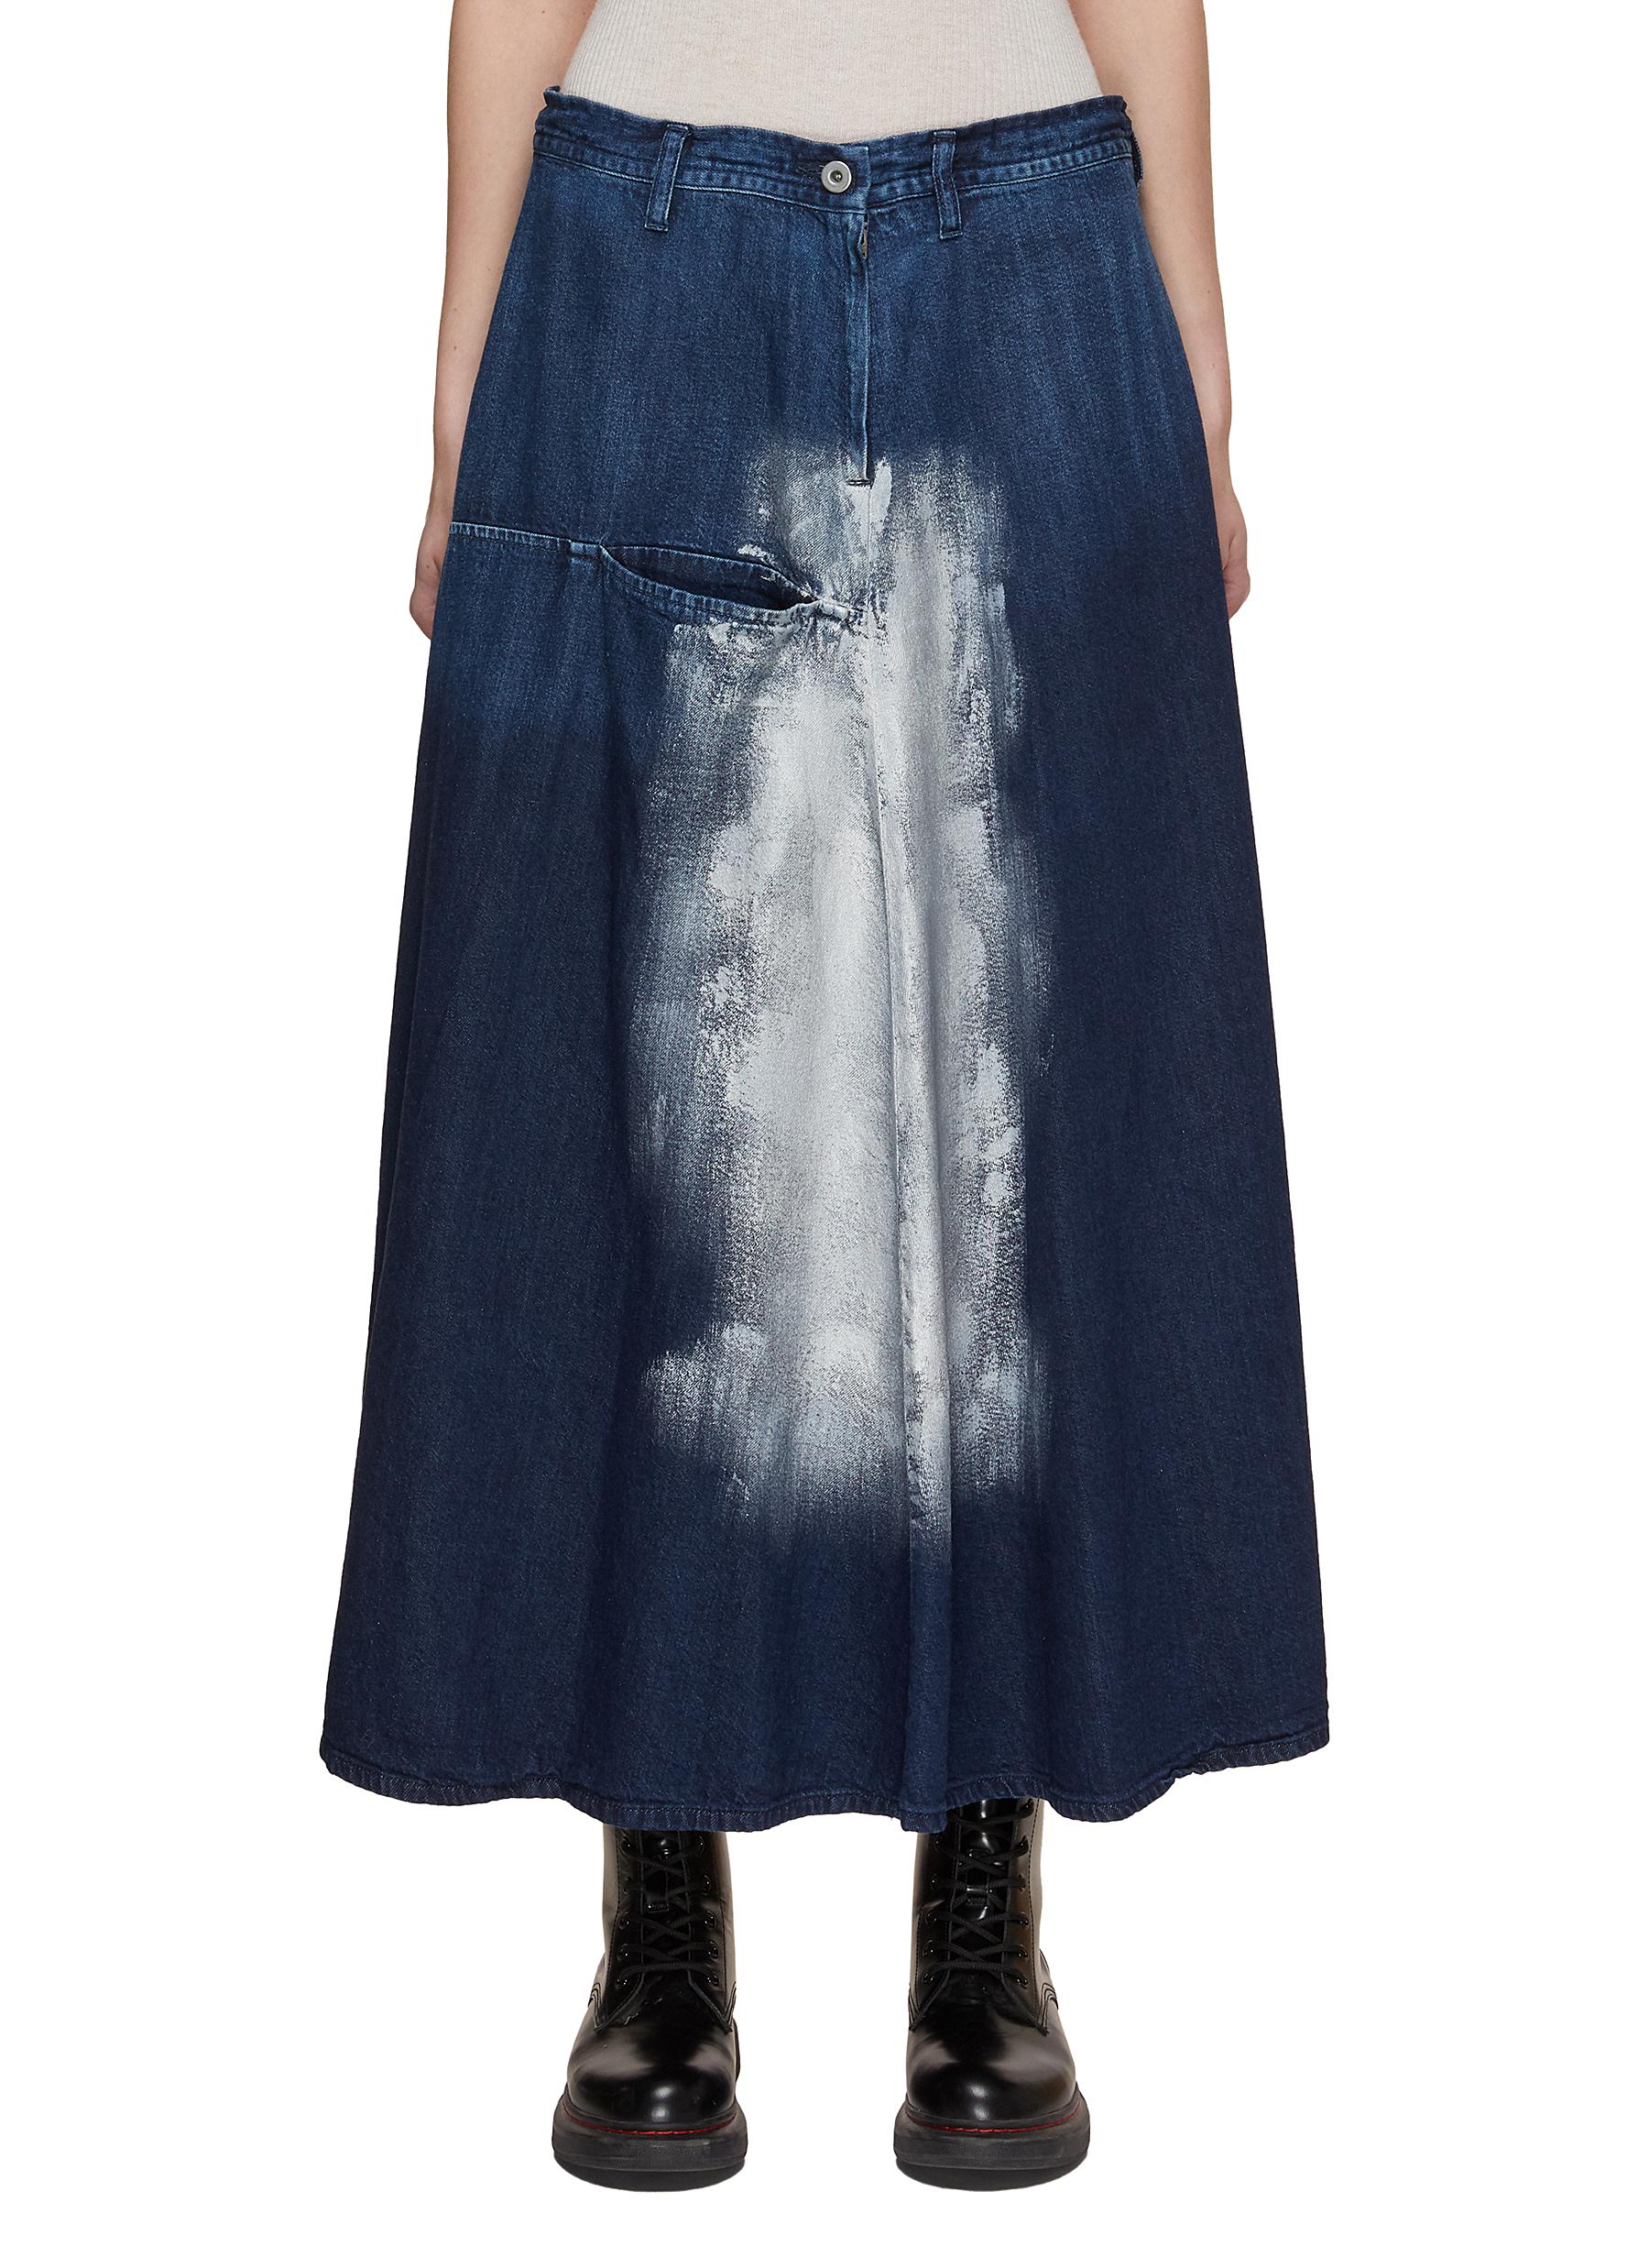 Victoria Beckham FIT & FLARE PATCHED SKIRT - Denim skirt - vintage wash  mid/light-blue denim - Zalando.co.uk